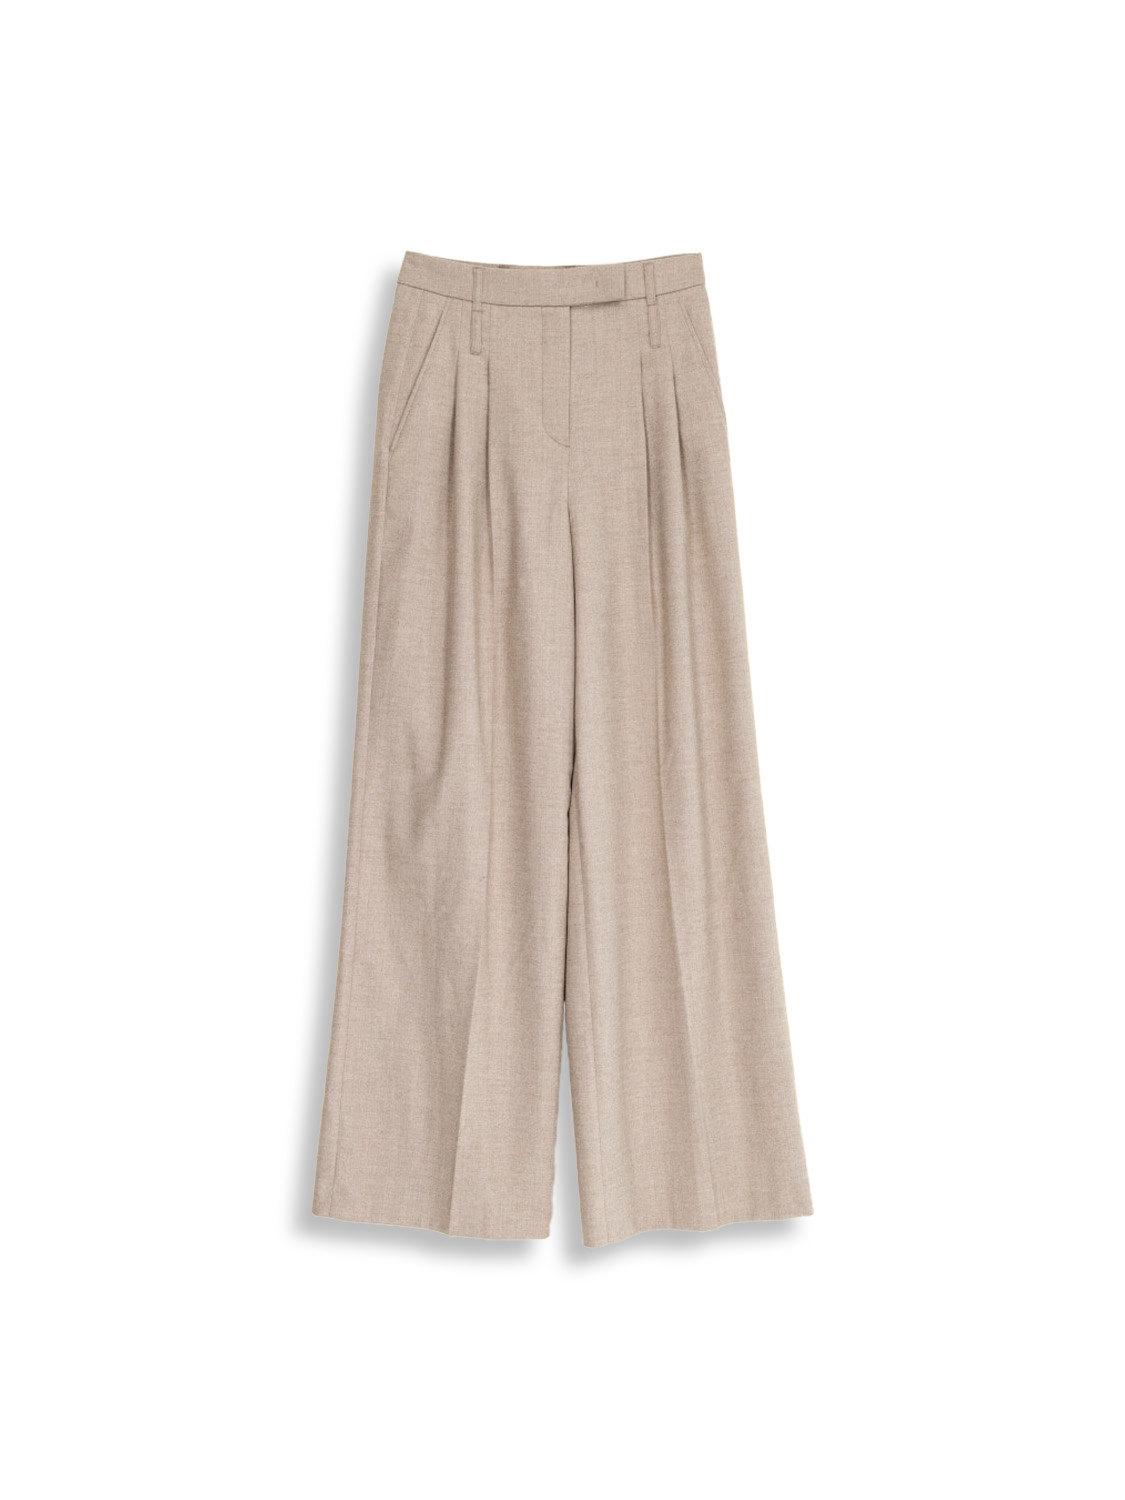 Seductive Giselle - Pantalones de lana plisados beige 42